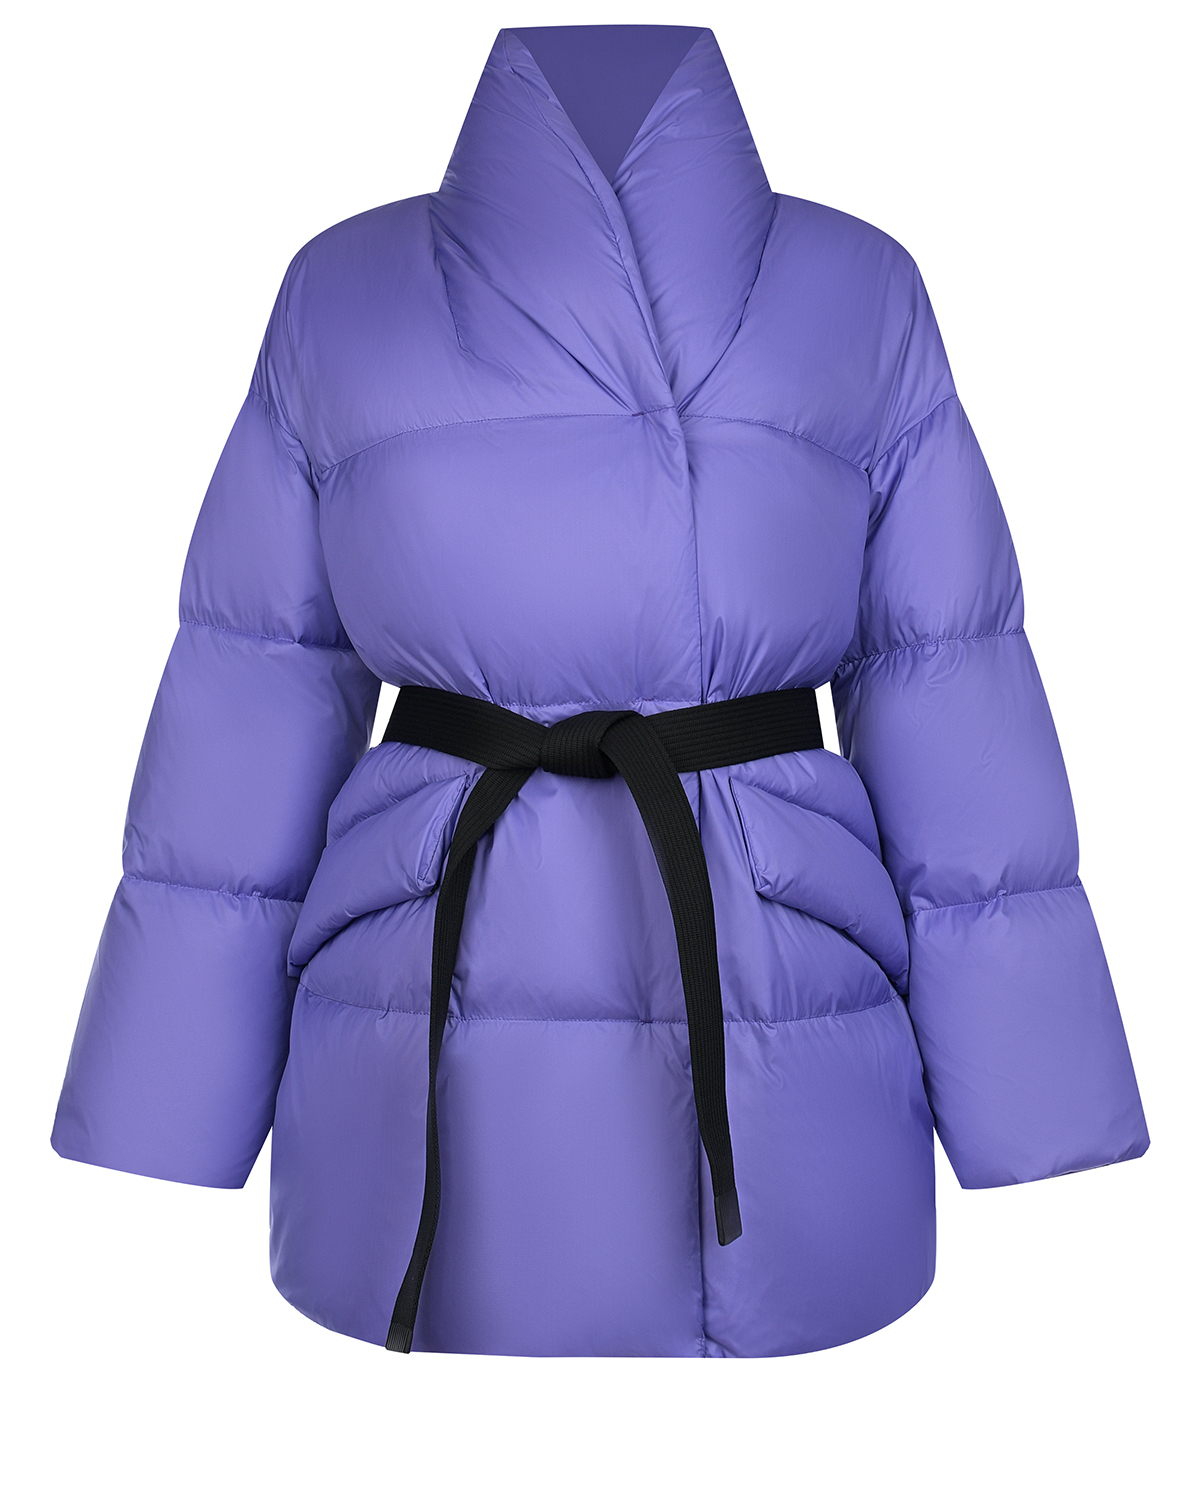 Лиловая куртка с черным поясом Naumi, размер 40, цвет лиловый